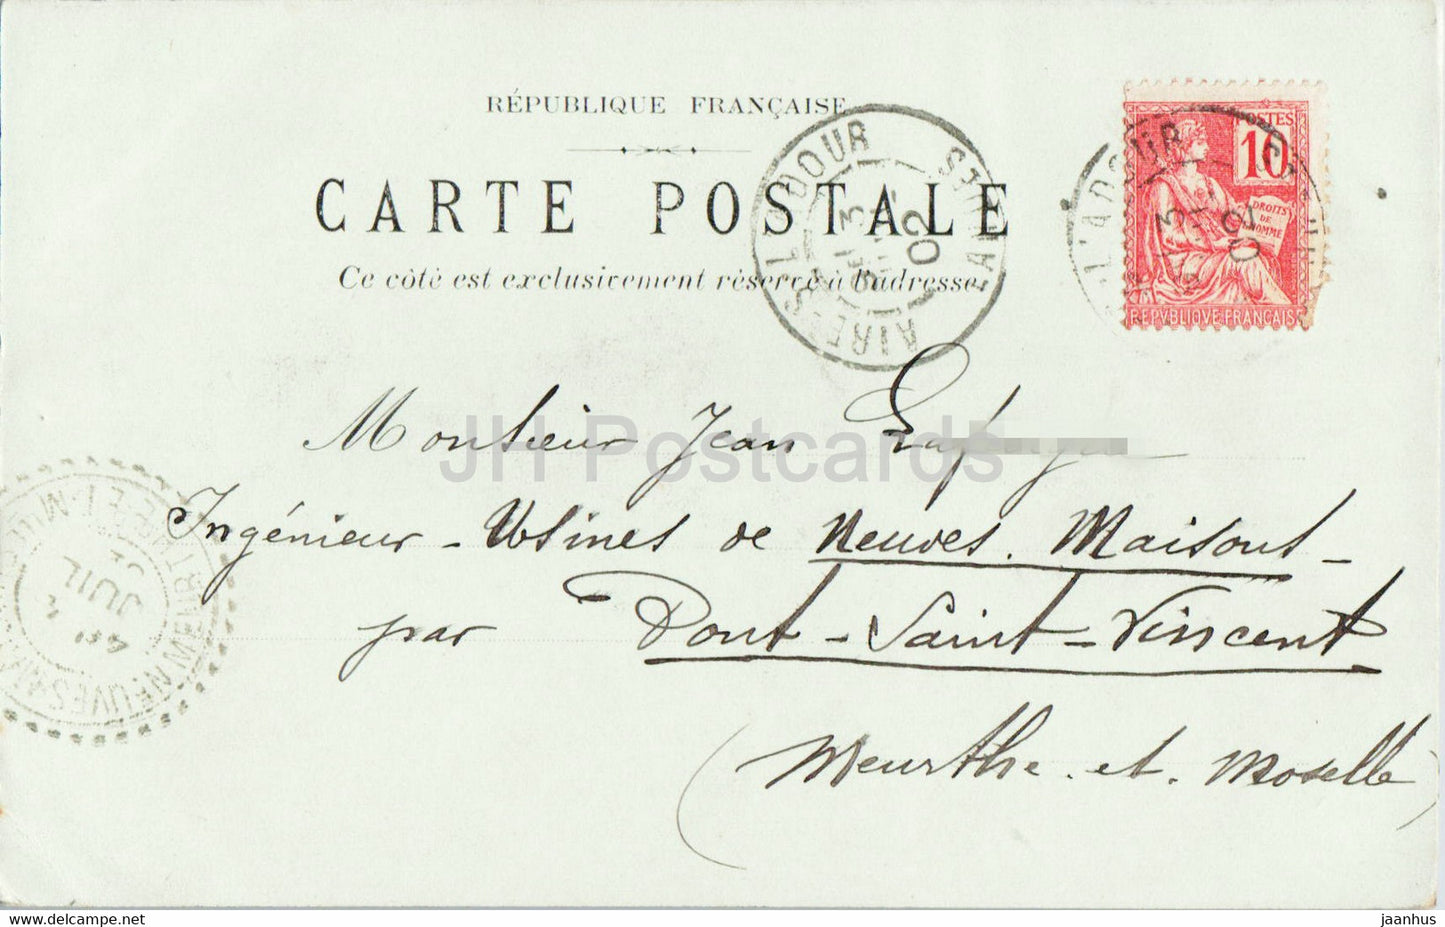 Pecheurs de L'Adour - Heliographie - old postcard - 1902 - France - used